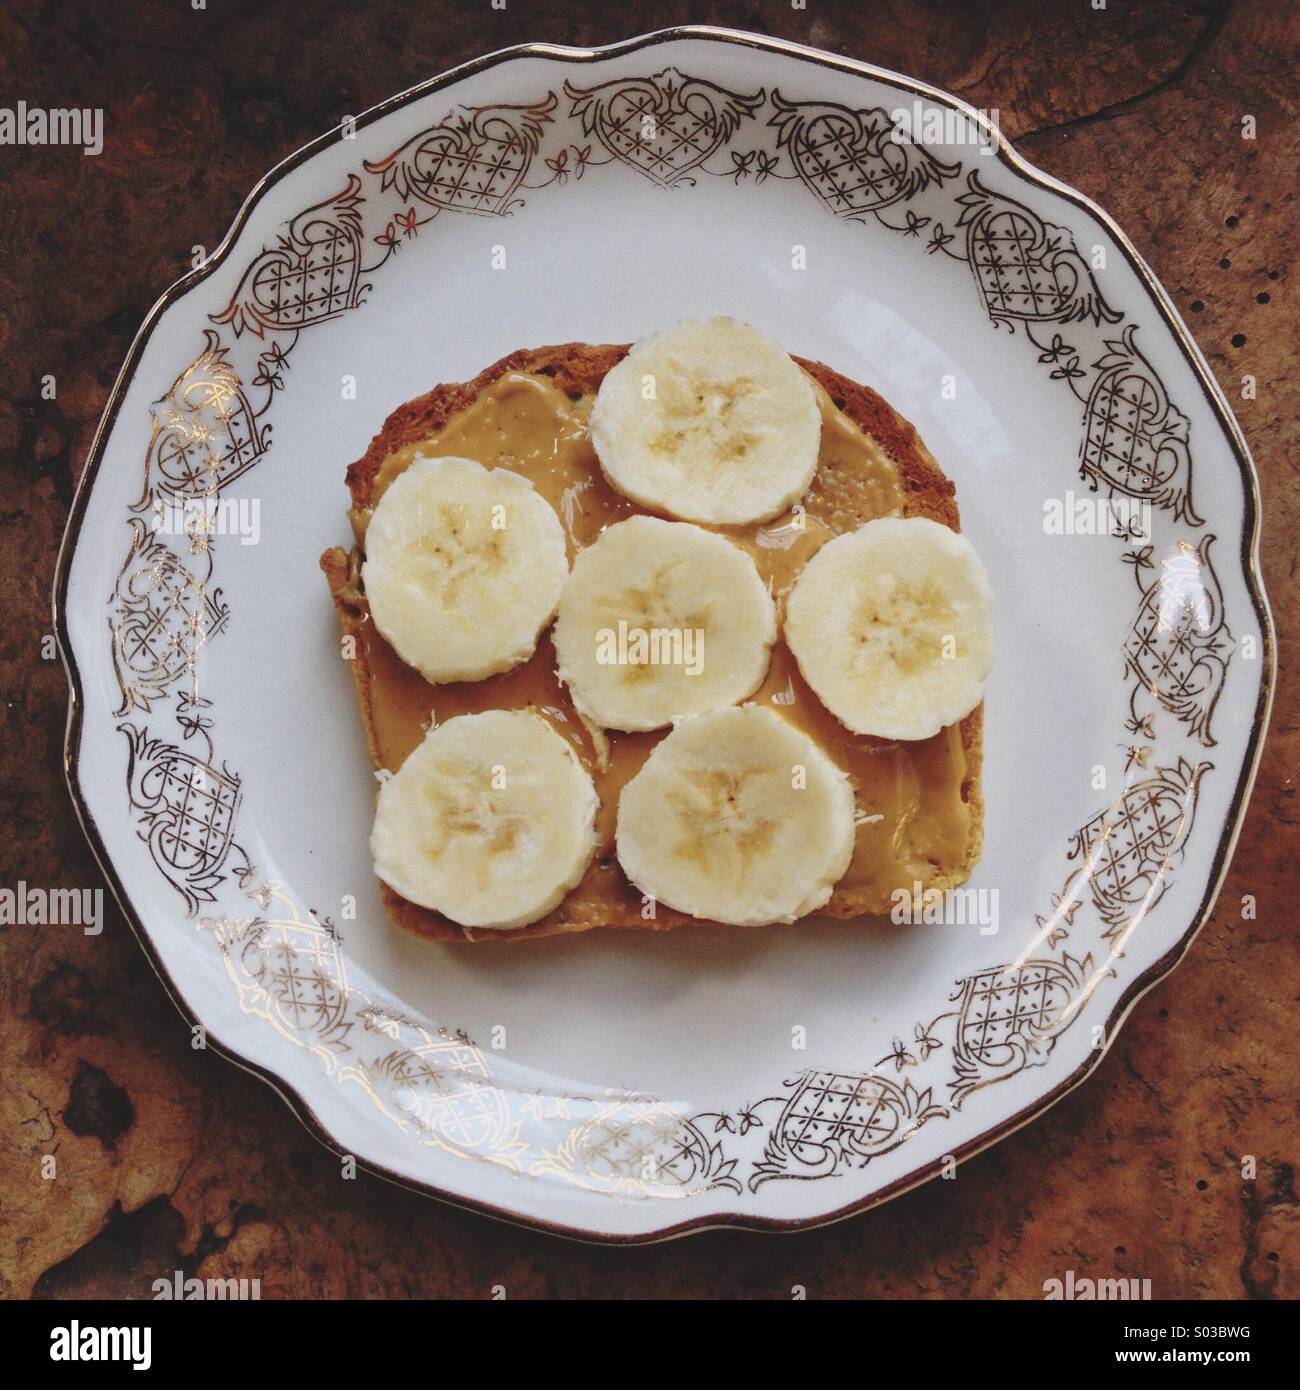 Aprire di fronte il burro di arachidi e fette di banana sandwich fantasia in oro bianco e la Cina la piastra sul tavolo rustico Foto Stock